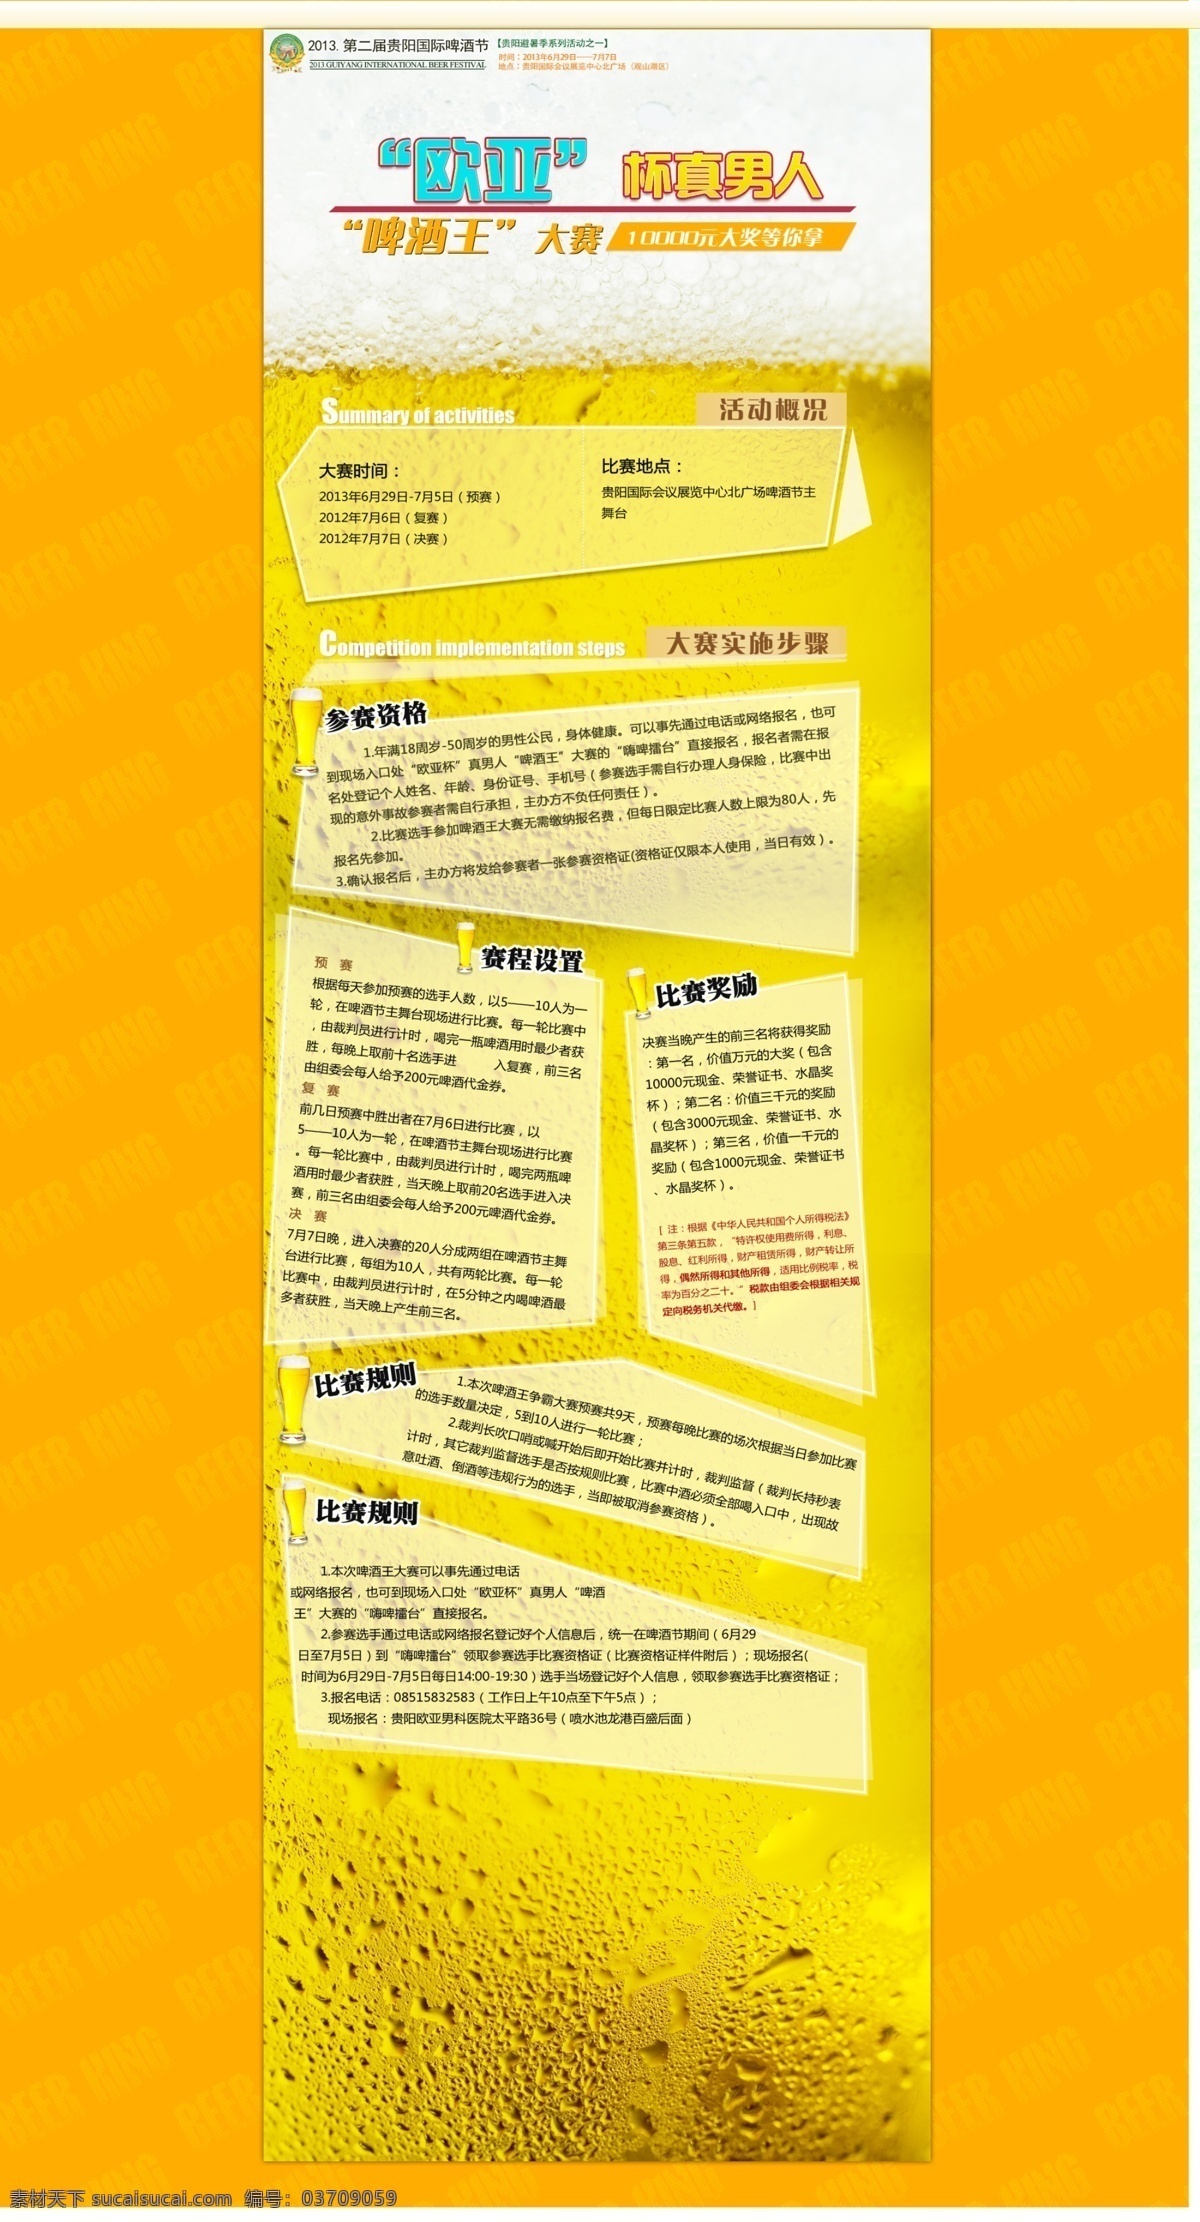 啤酒节 啤酒 模板下载 网页模板 网页设计 香槟色 医院 源文件 中文模板 网页素材